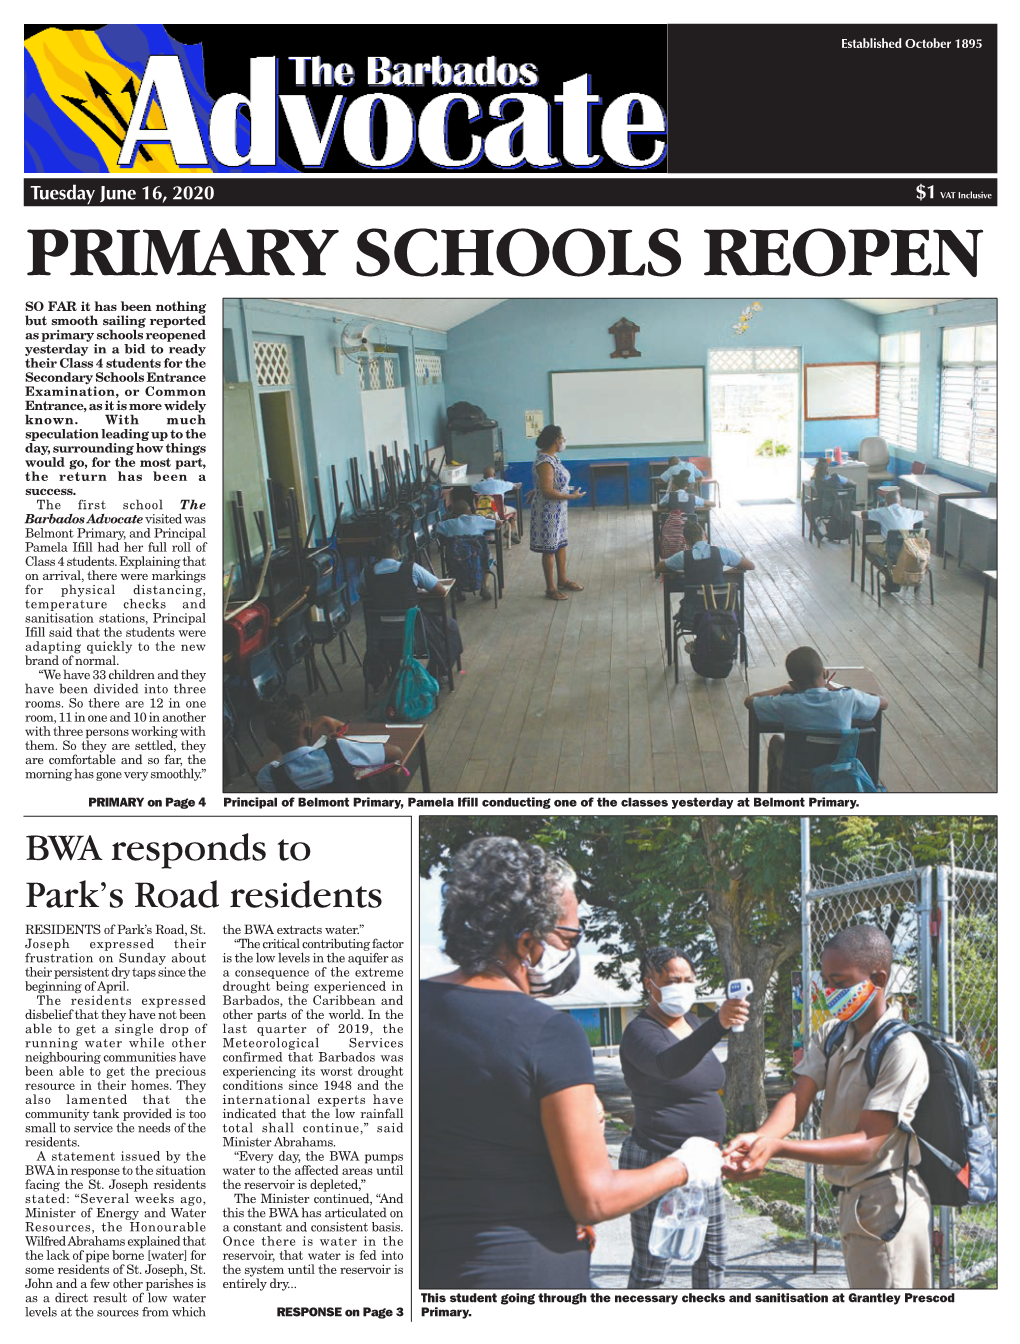 Primary Schools Reopen